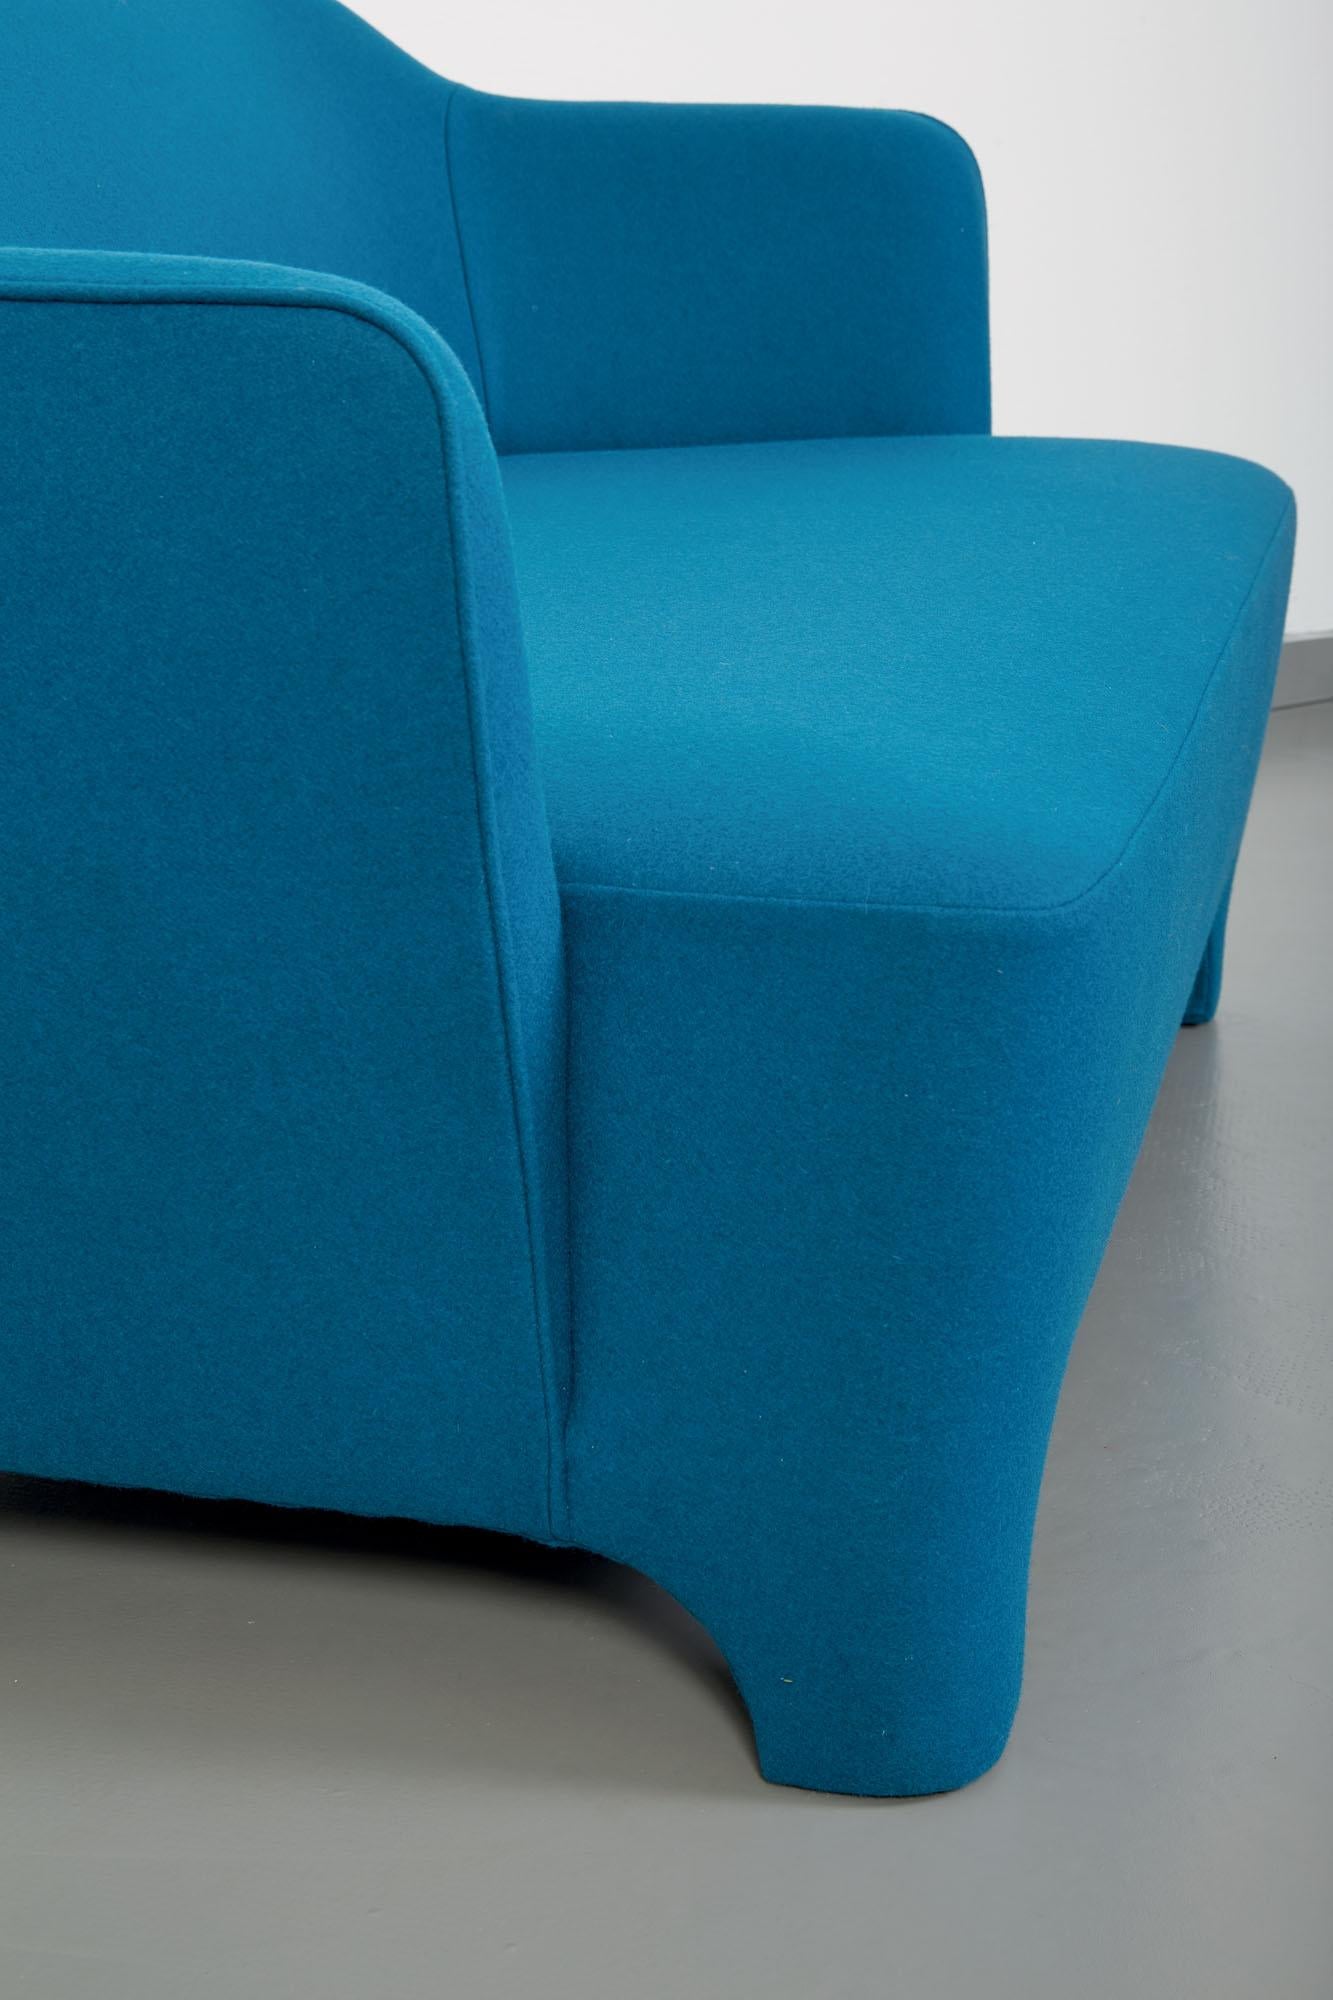 Truno Small Sofa in Felt Wool, by Corrado Corradi Dell'Acqua for TATO In New Condition For Sale In Gargallo, NO